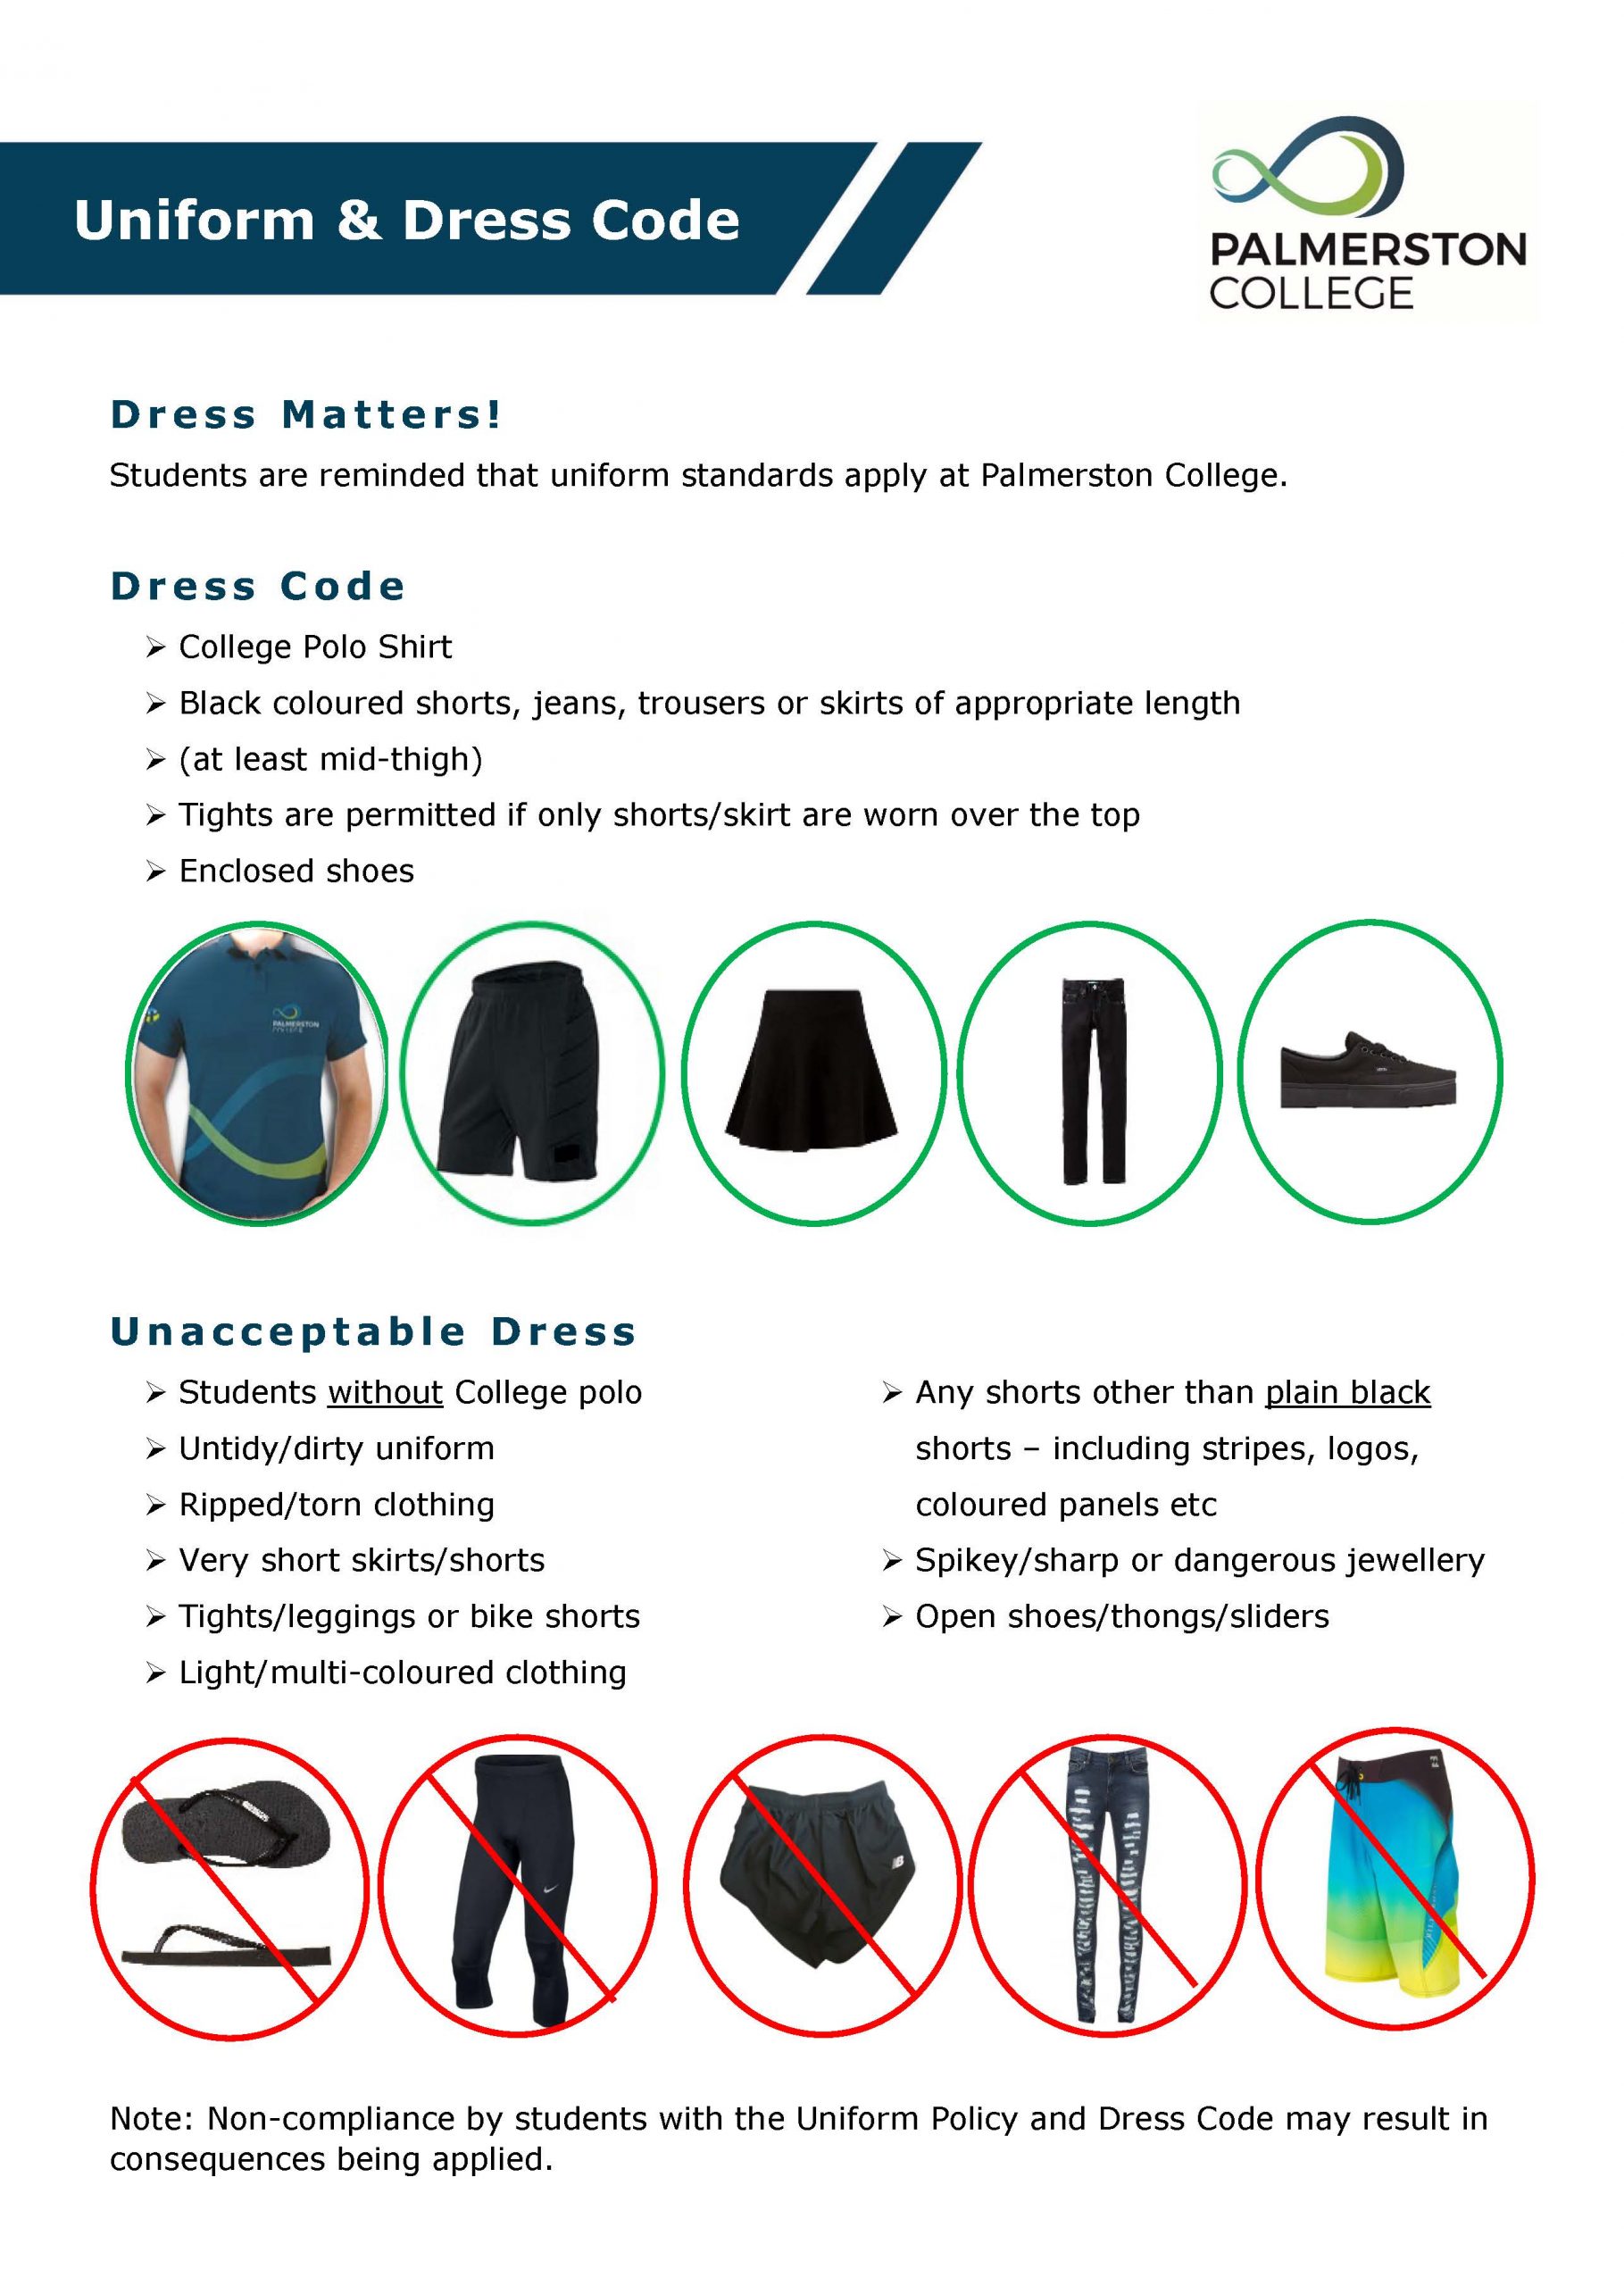 Uniform & Dress Code Palmerston College